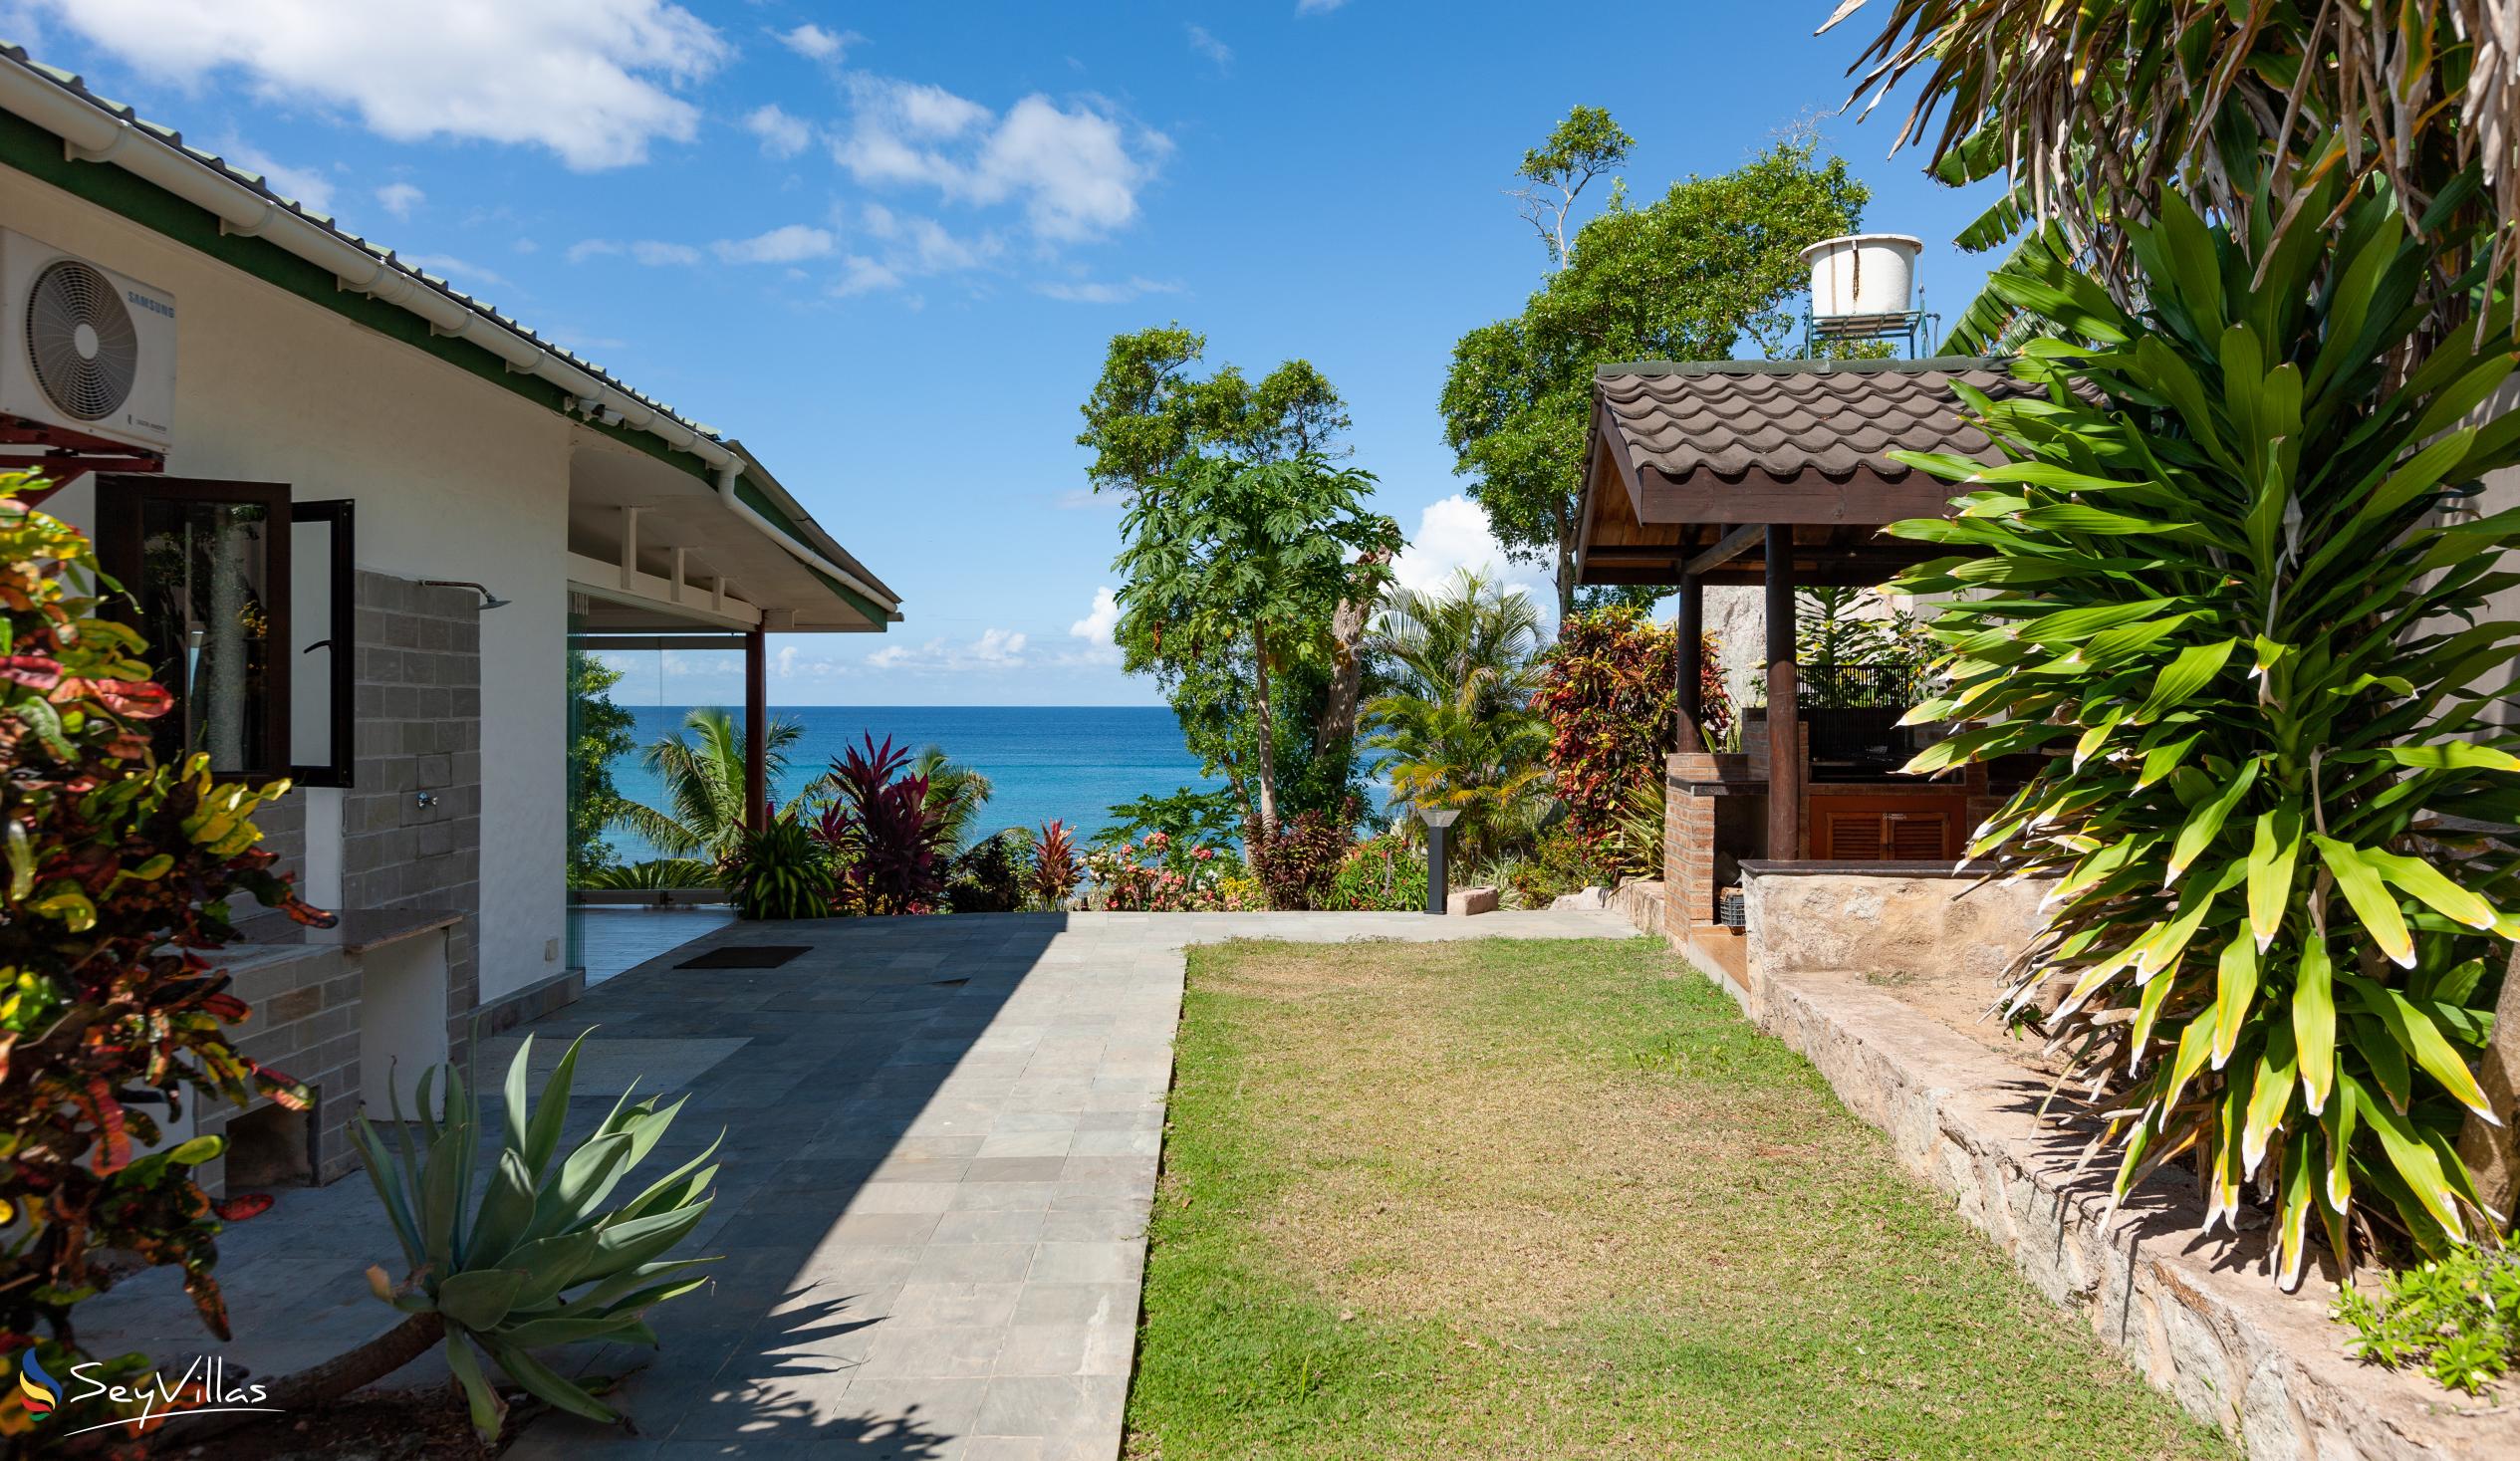 Foto 15: Cote Mer Villa - Aussenbereich - Praslin (Seychellen)